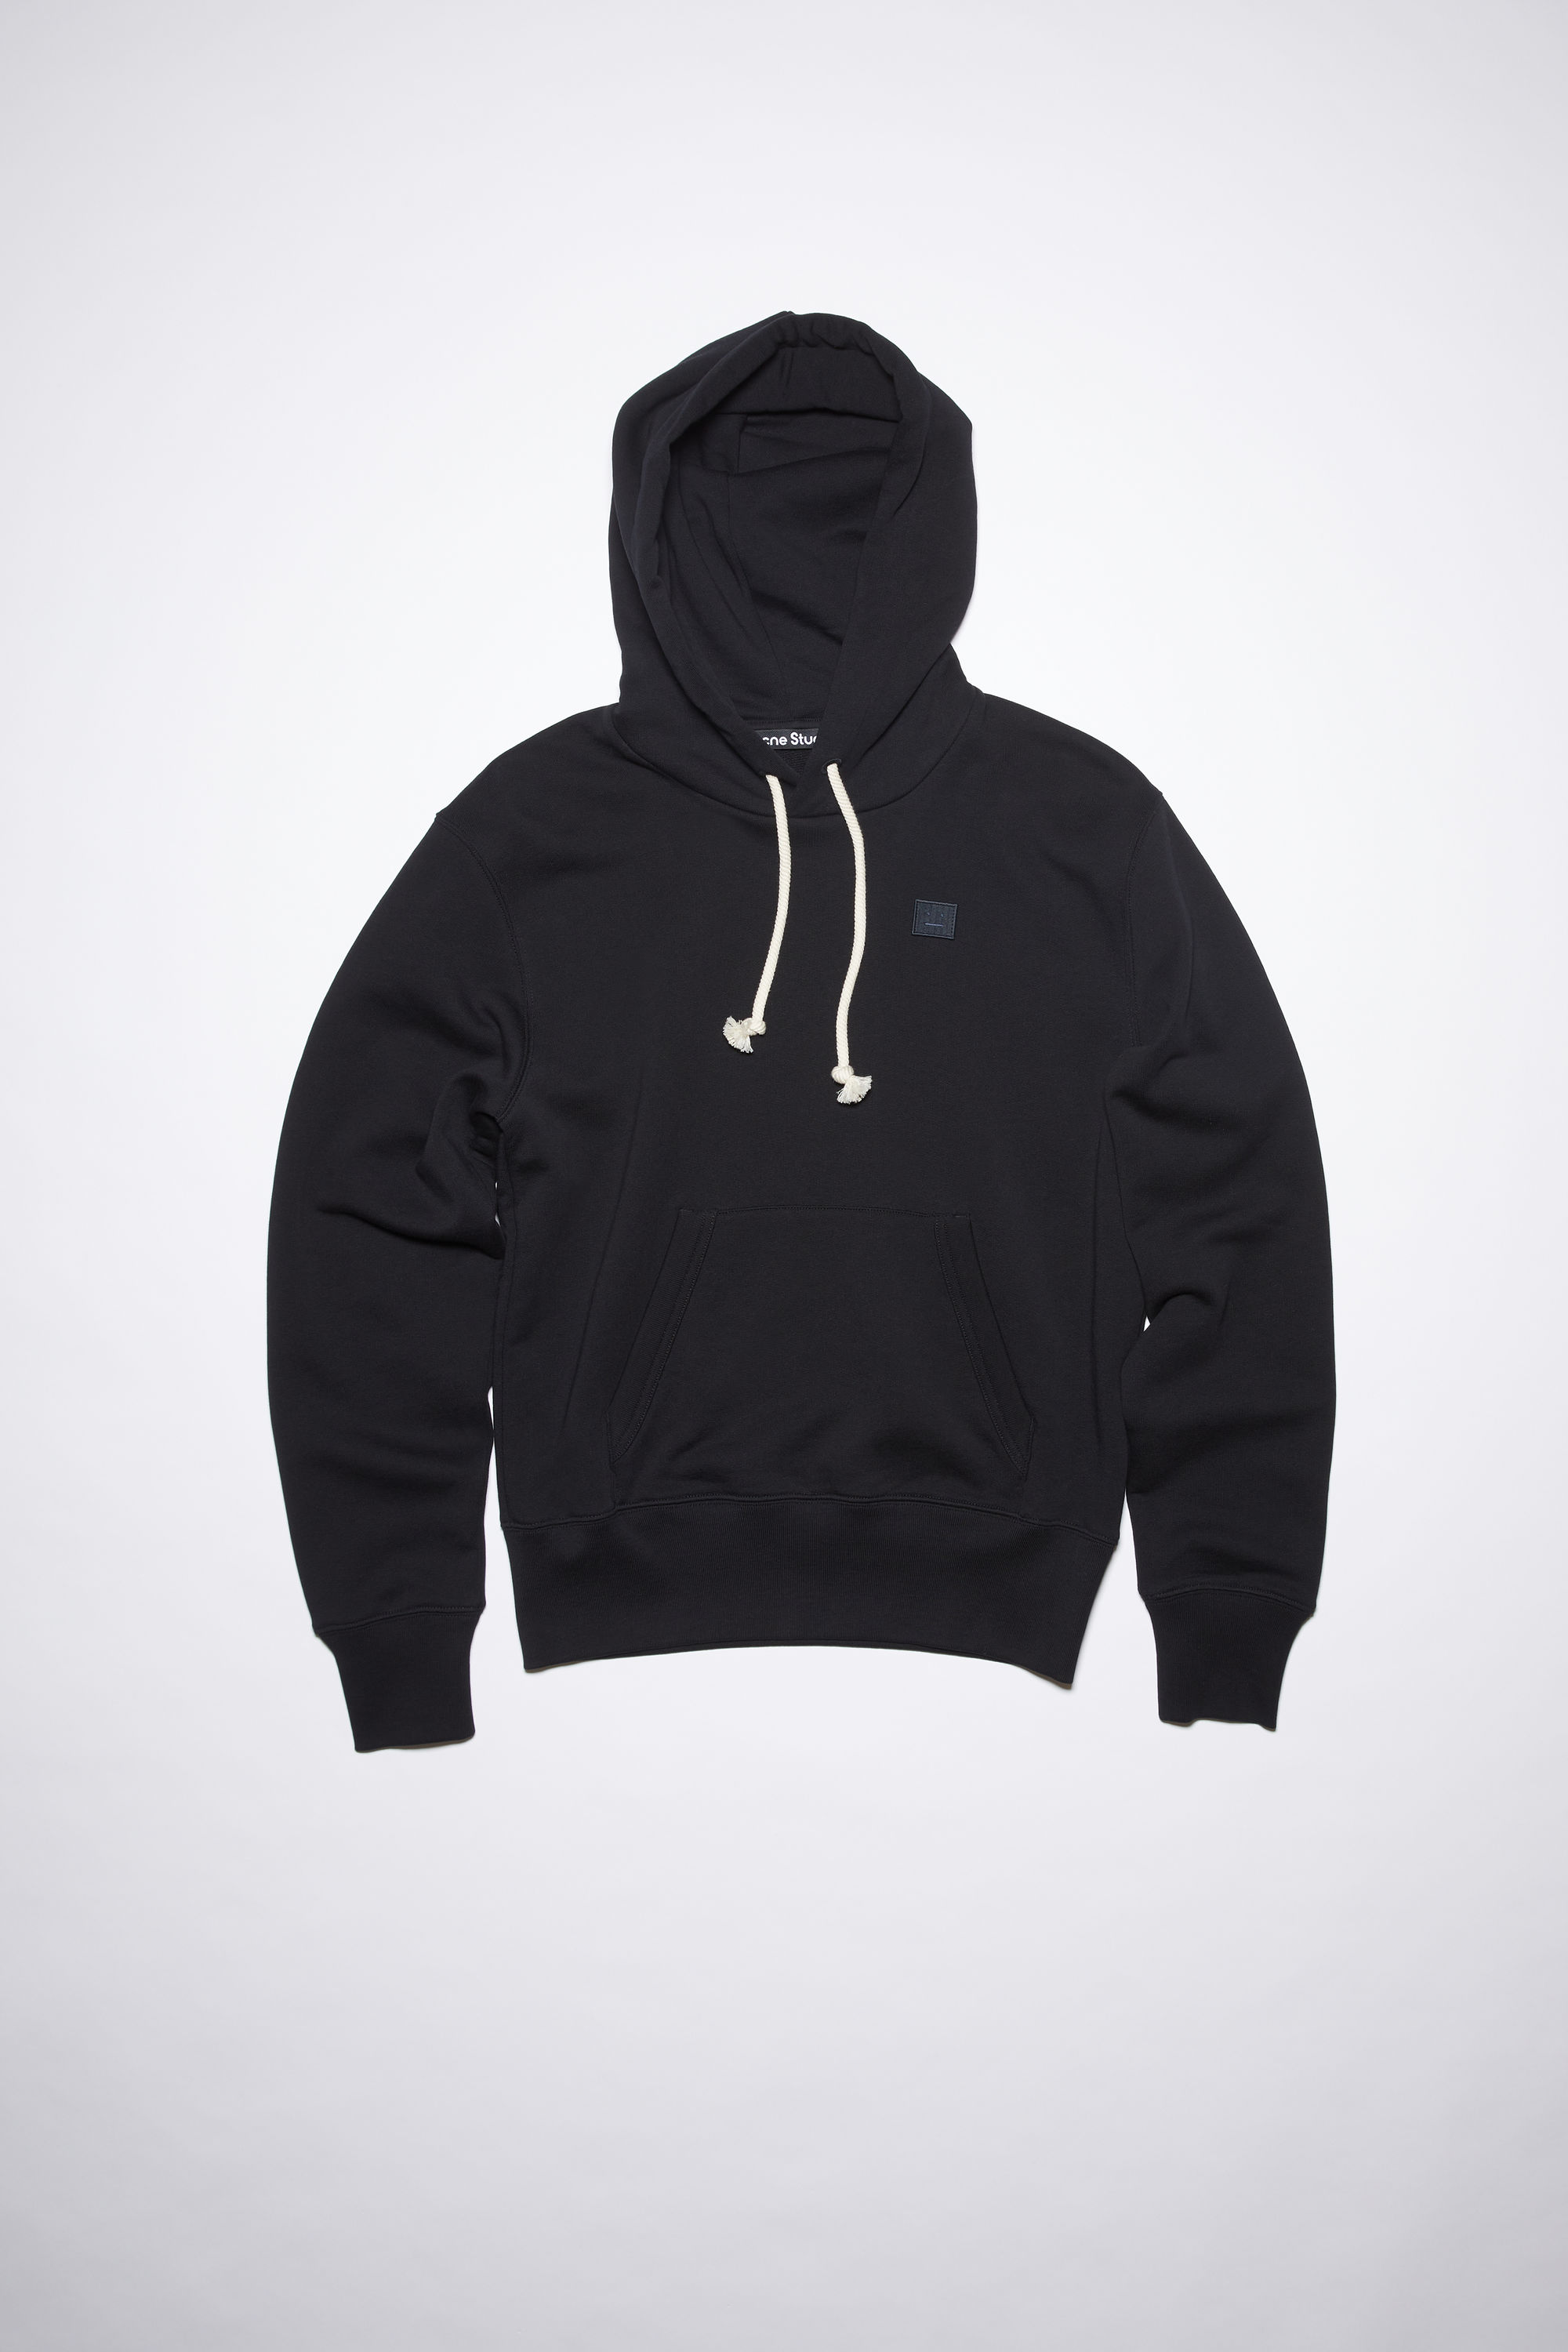 Acne Studios Hooded Sweatshirt In Schwarz